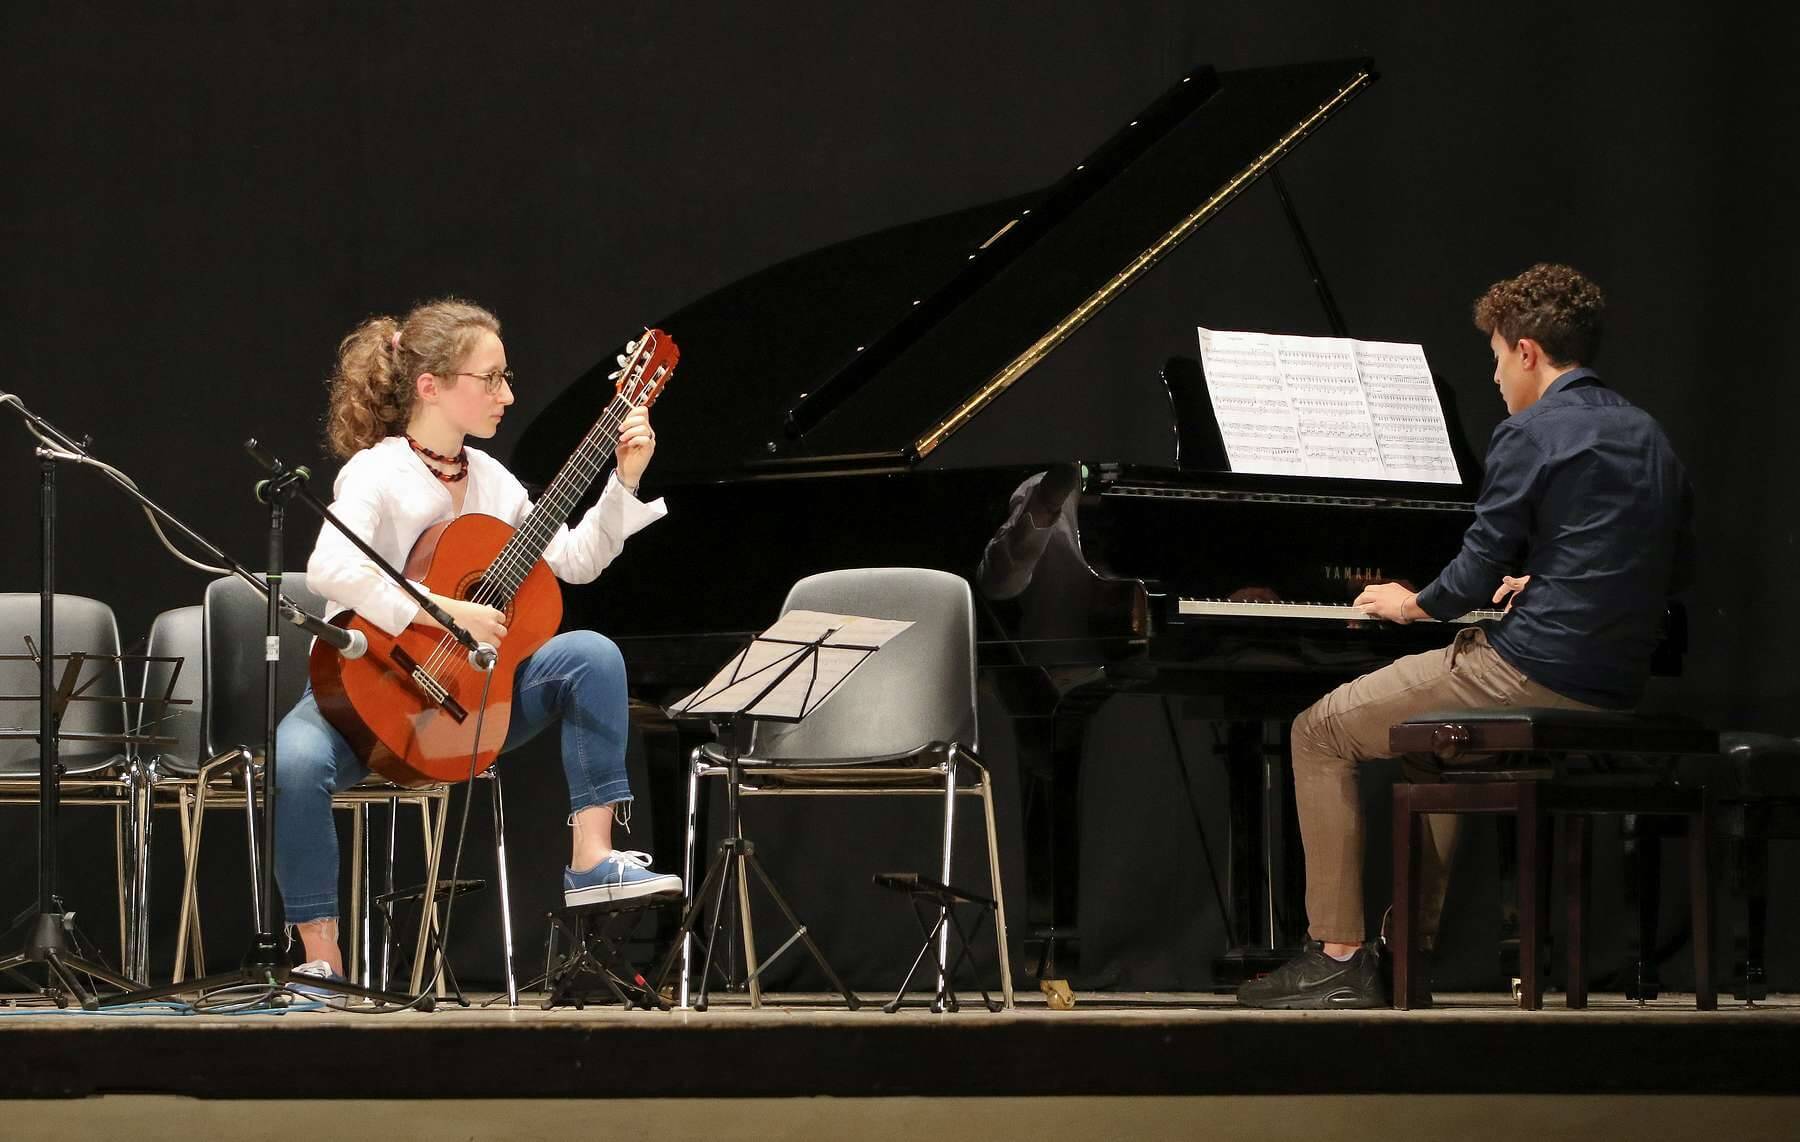 Una ragazza suona la chitarra accompagnata da un ragazzo che suona il pianoforte durante un concerto